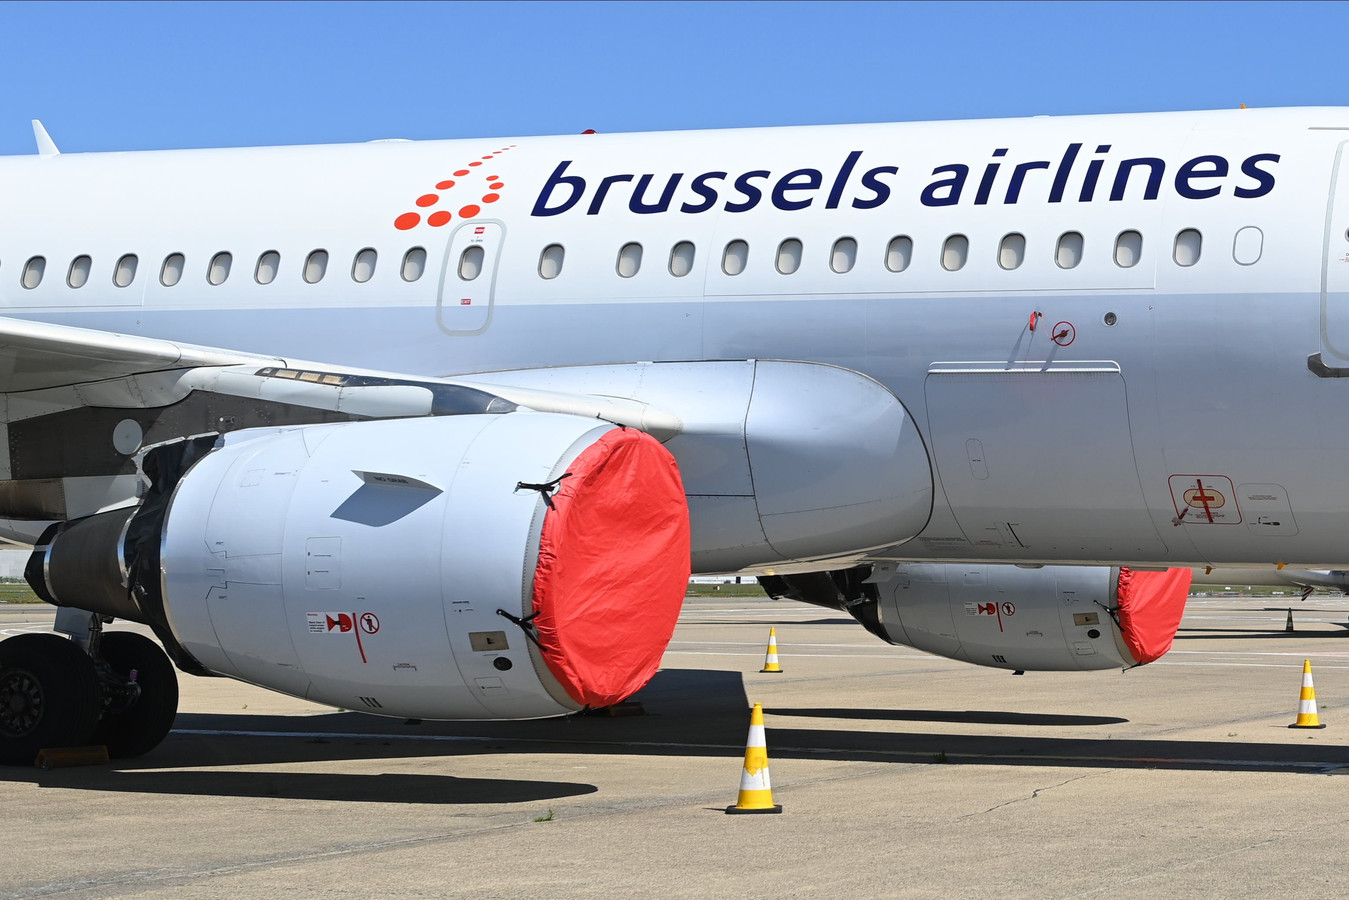 Brussels Airlines A Dû Supprimer Cinq Vols Par Manque De Personnel